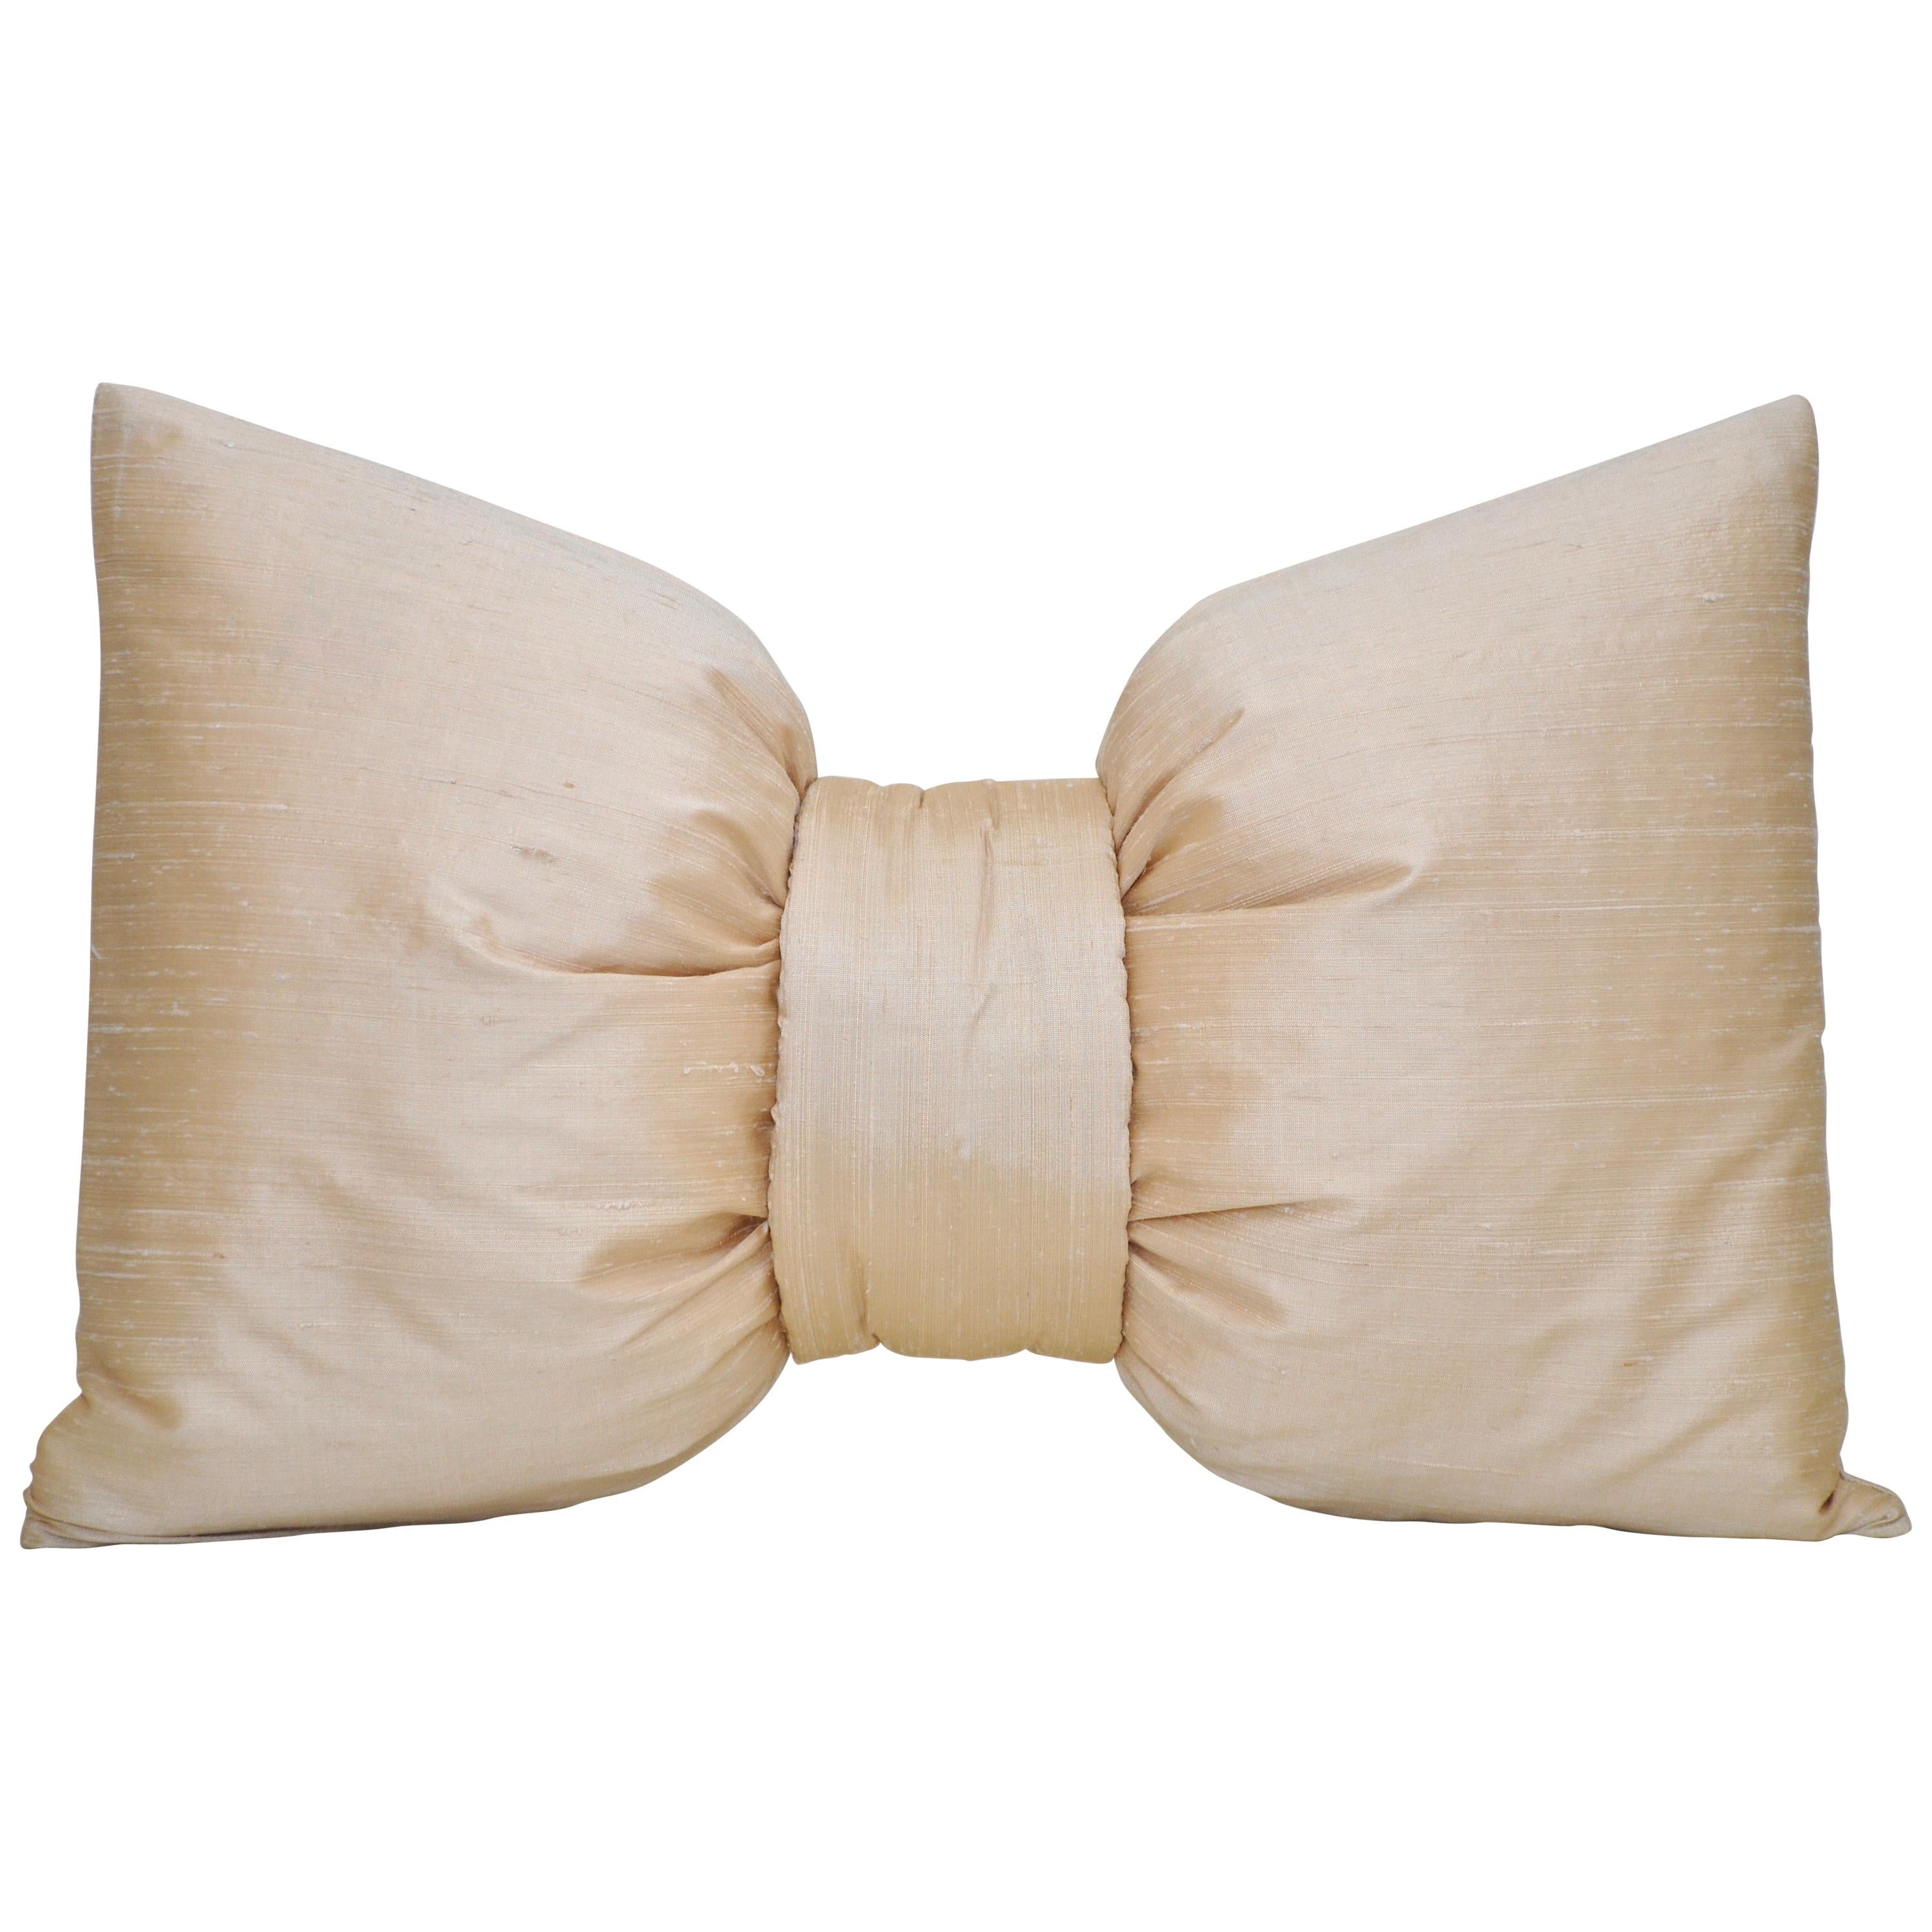 French Antique Light Champagne Cream Nude Blush Peach Silk Bow Cushion Pillow